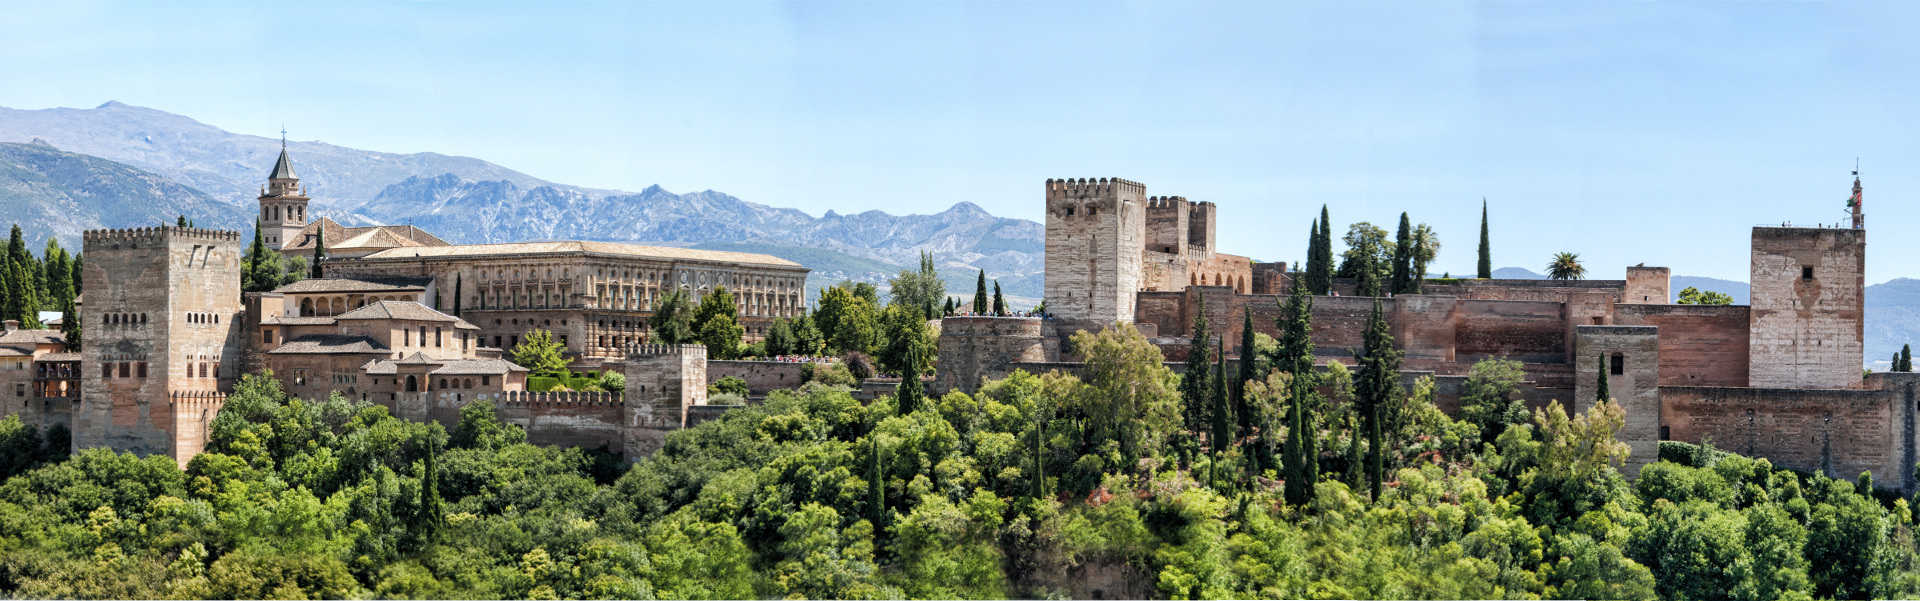 Die Alhambra in Granada, Spanien - Europa Reisen von Oasis Travel